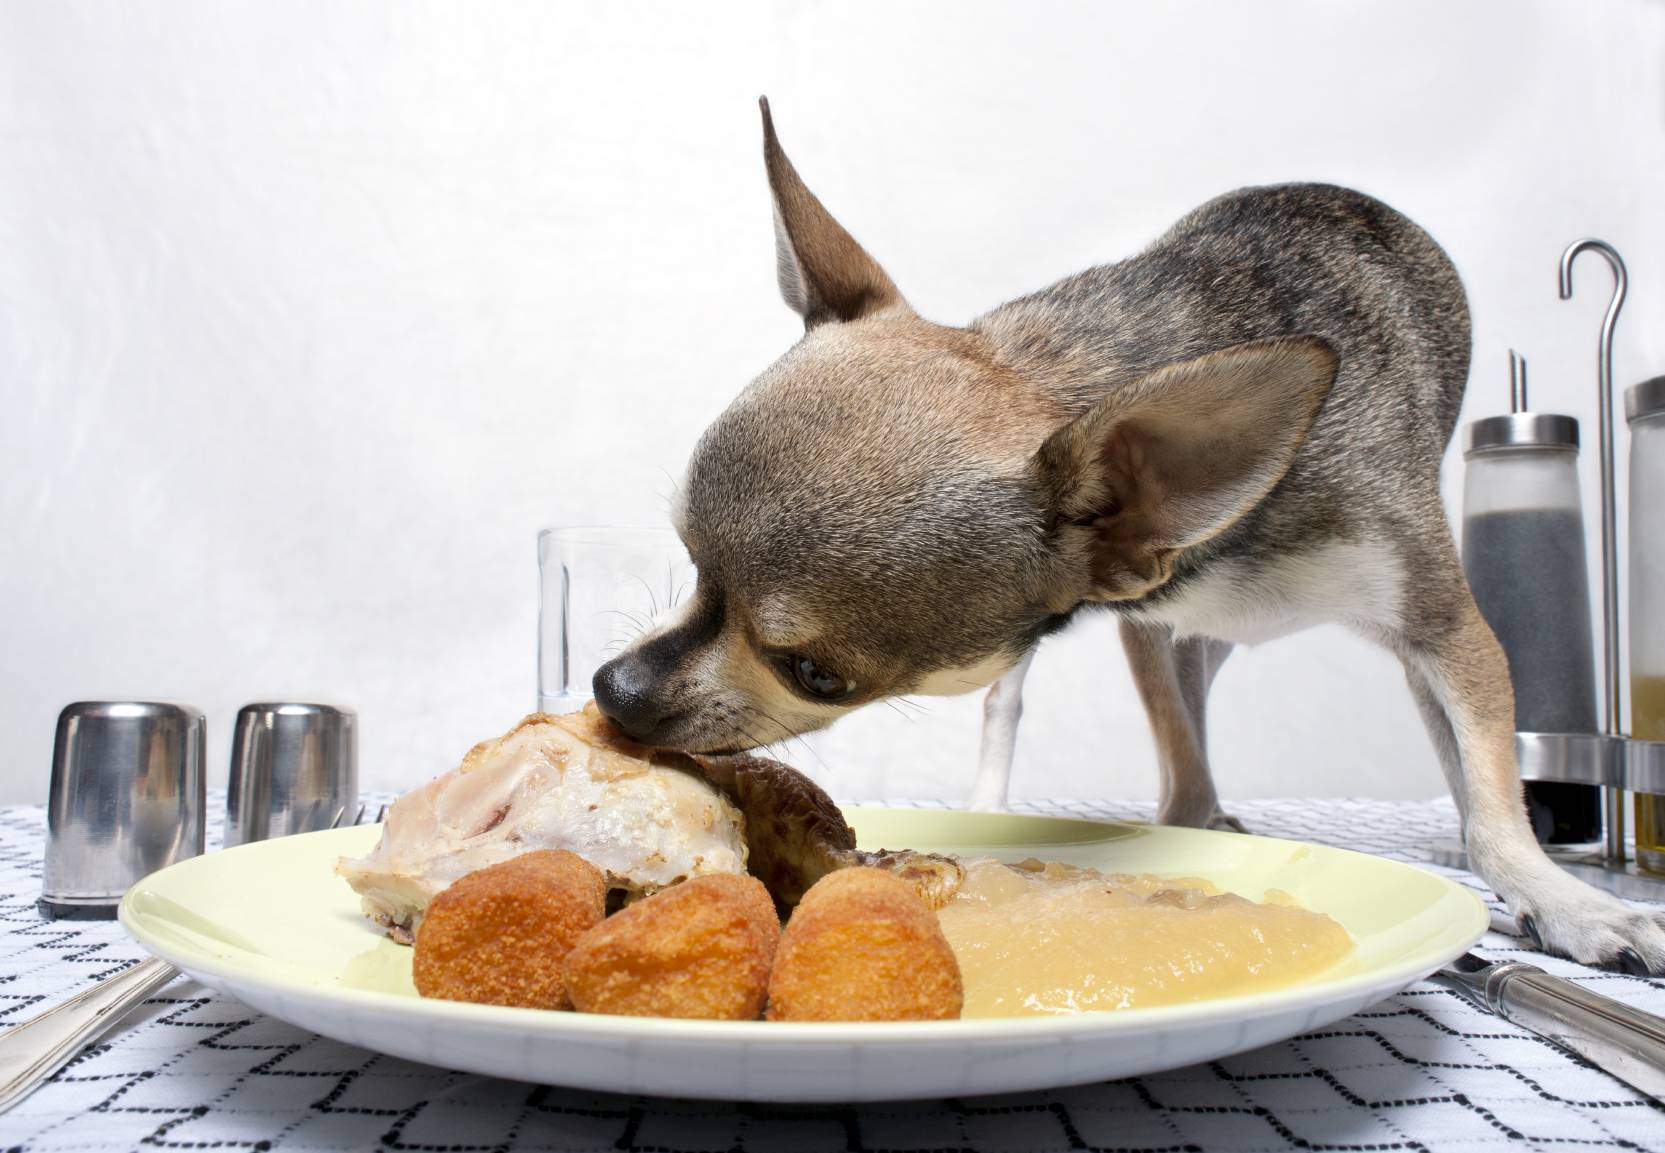 Как правильно кормить собаку натуральной пищей?